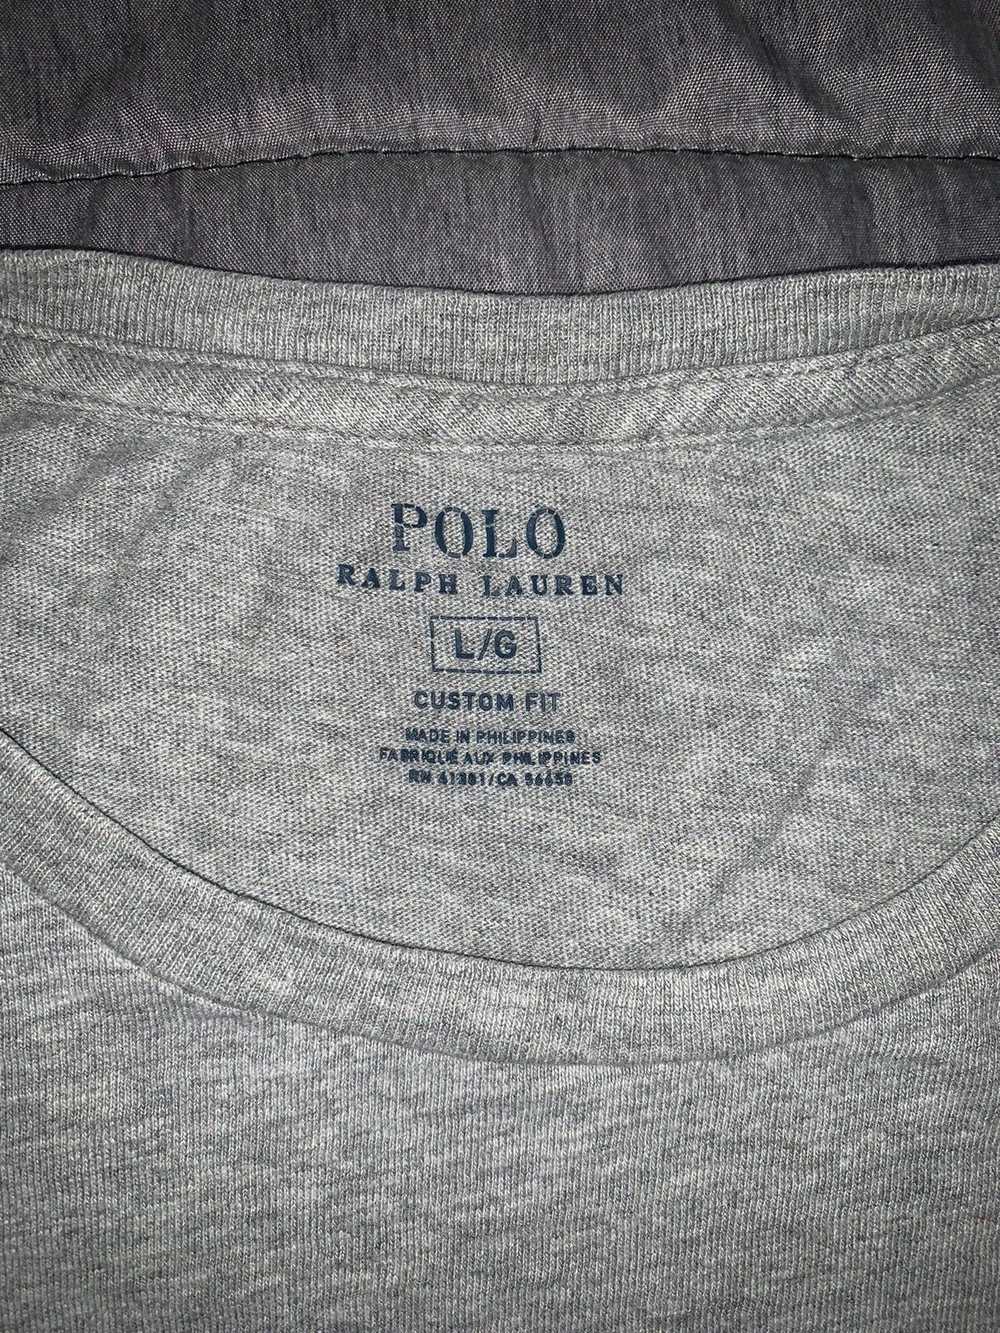 Polo Ralph Lauren × Ralph Lauren × Vintage Polo R… - image 2